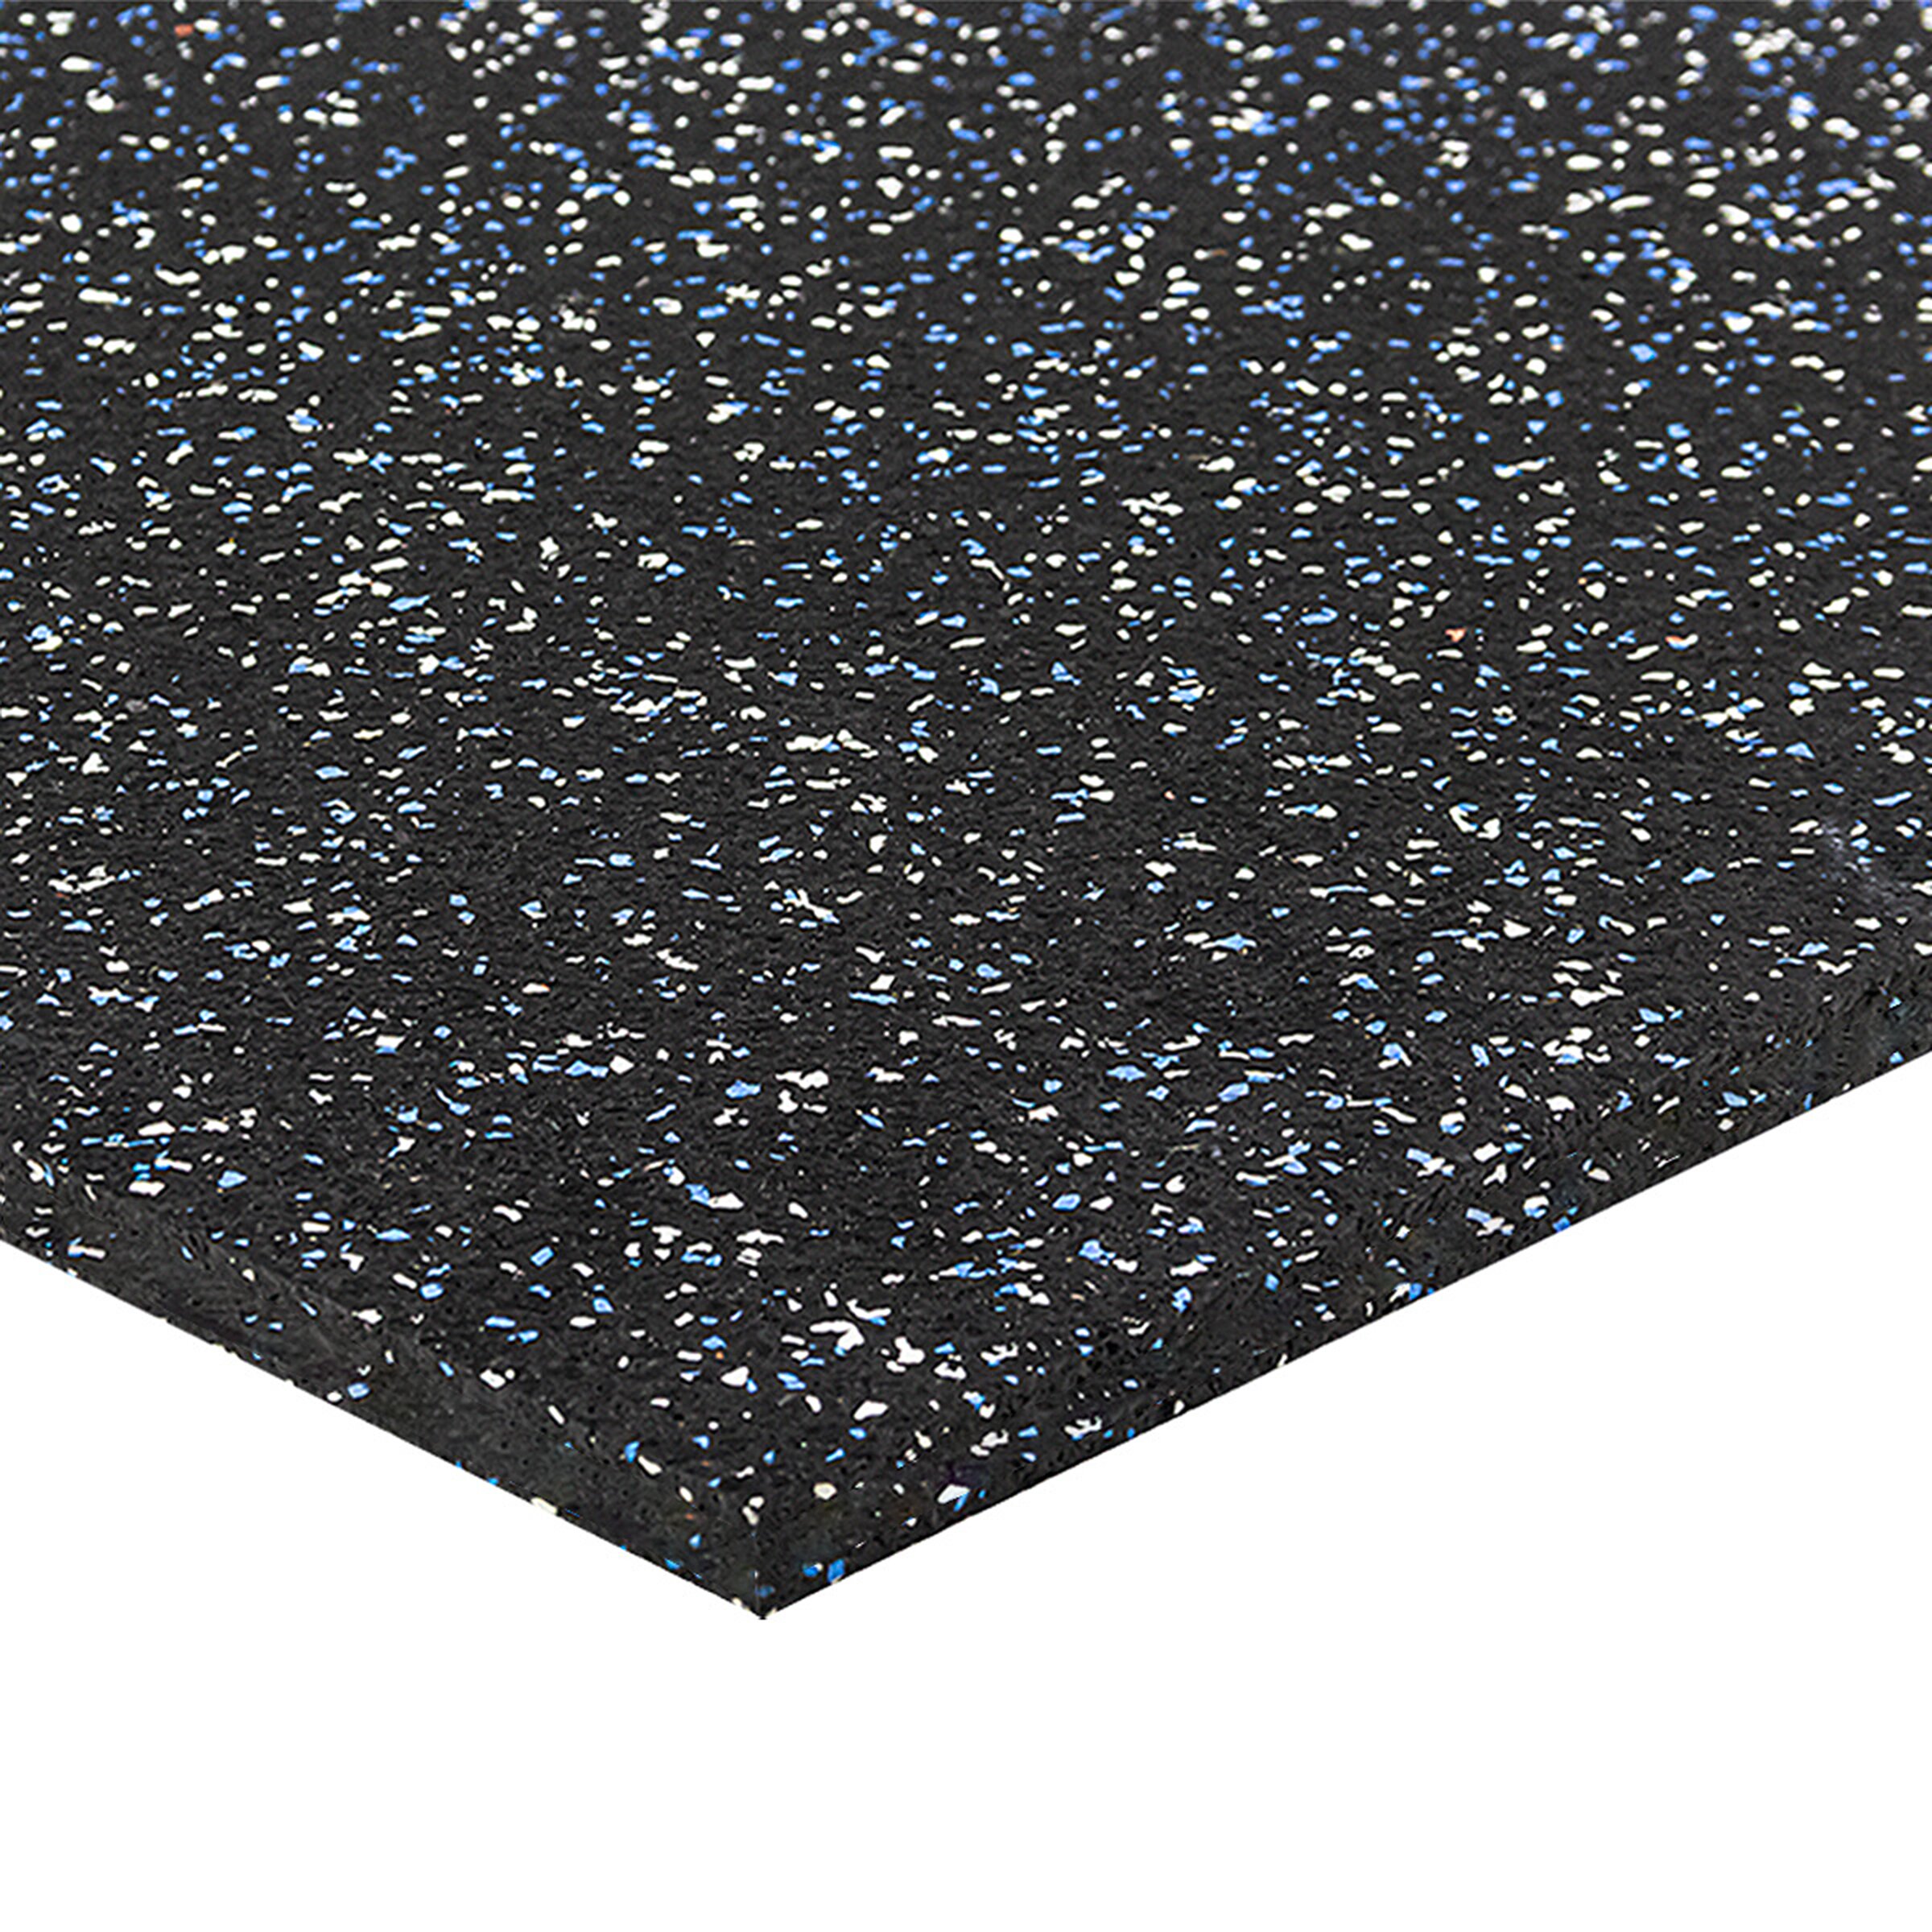 Čierno-bielo-modrá podlahová guma (puzzle - roh) FLOMA FitFlo SF1050 - dĺžka 50 cm, šírka 50 cm, výška 1,6 cm